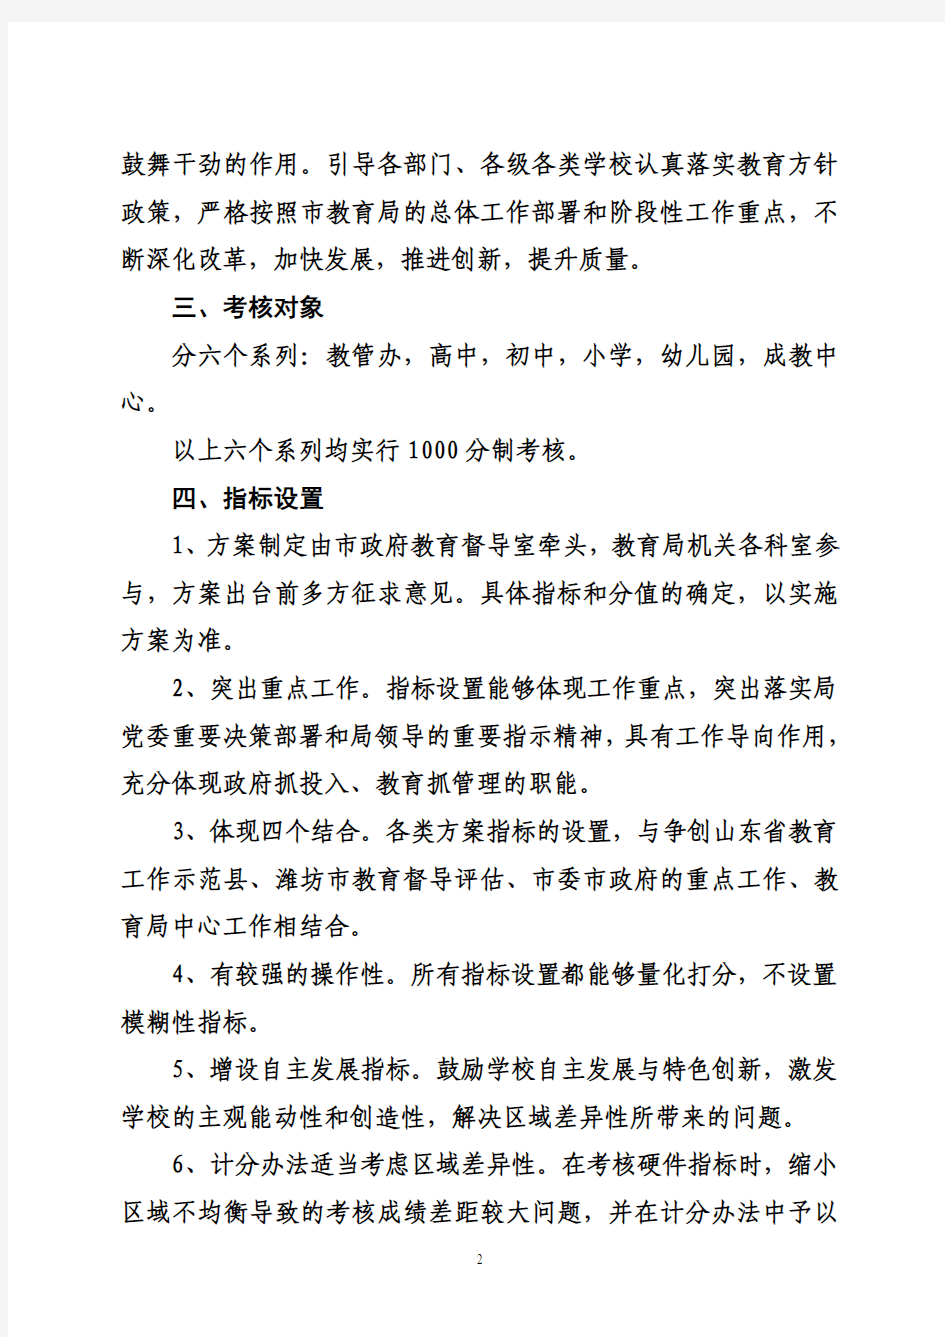 青州市教育系统2011年度综合考核评价办法(征求意见稿)